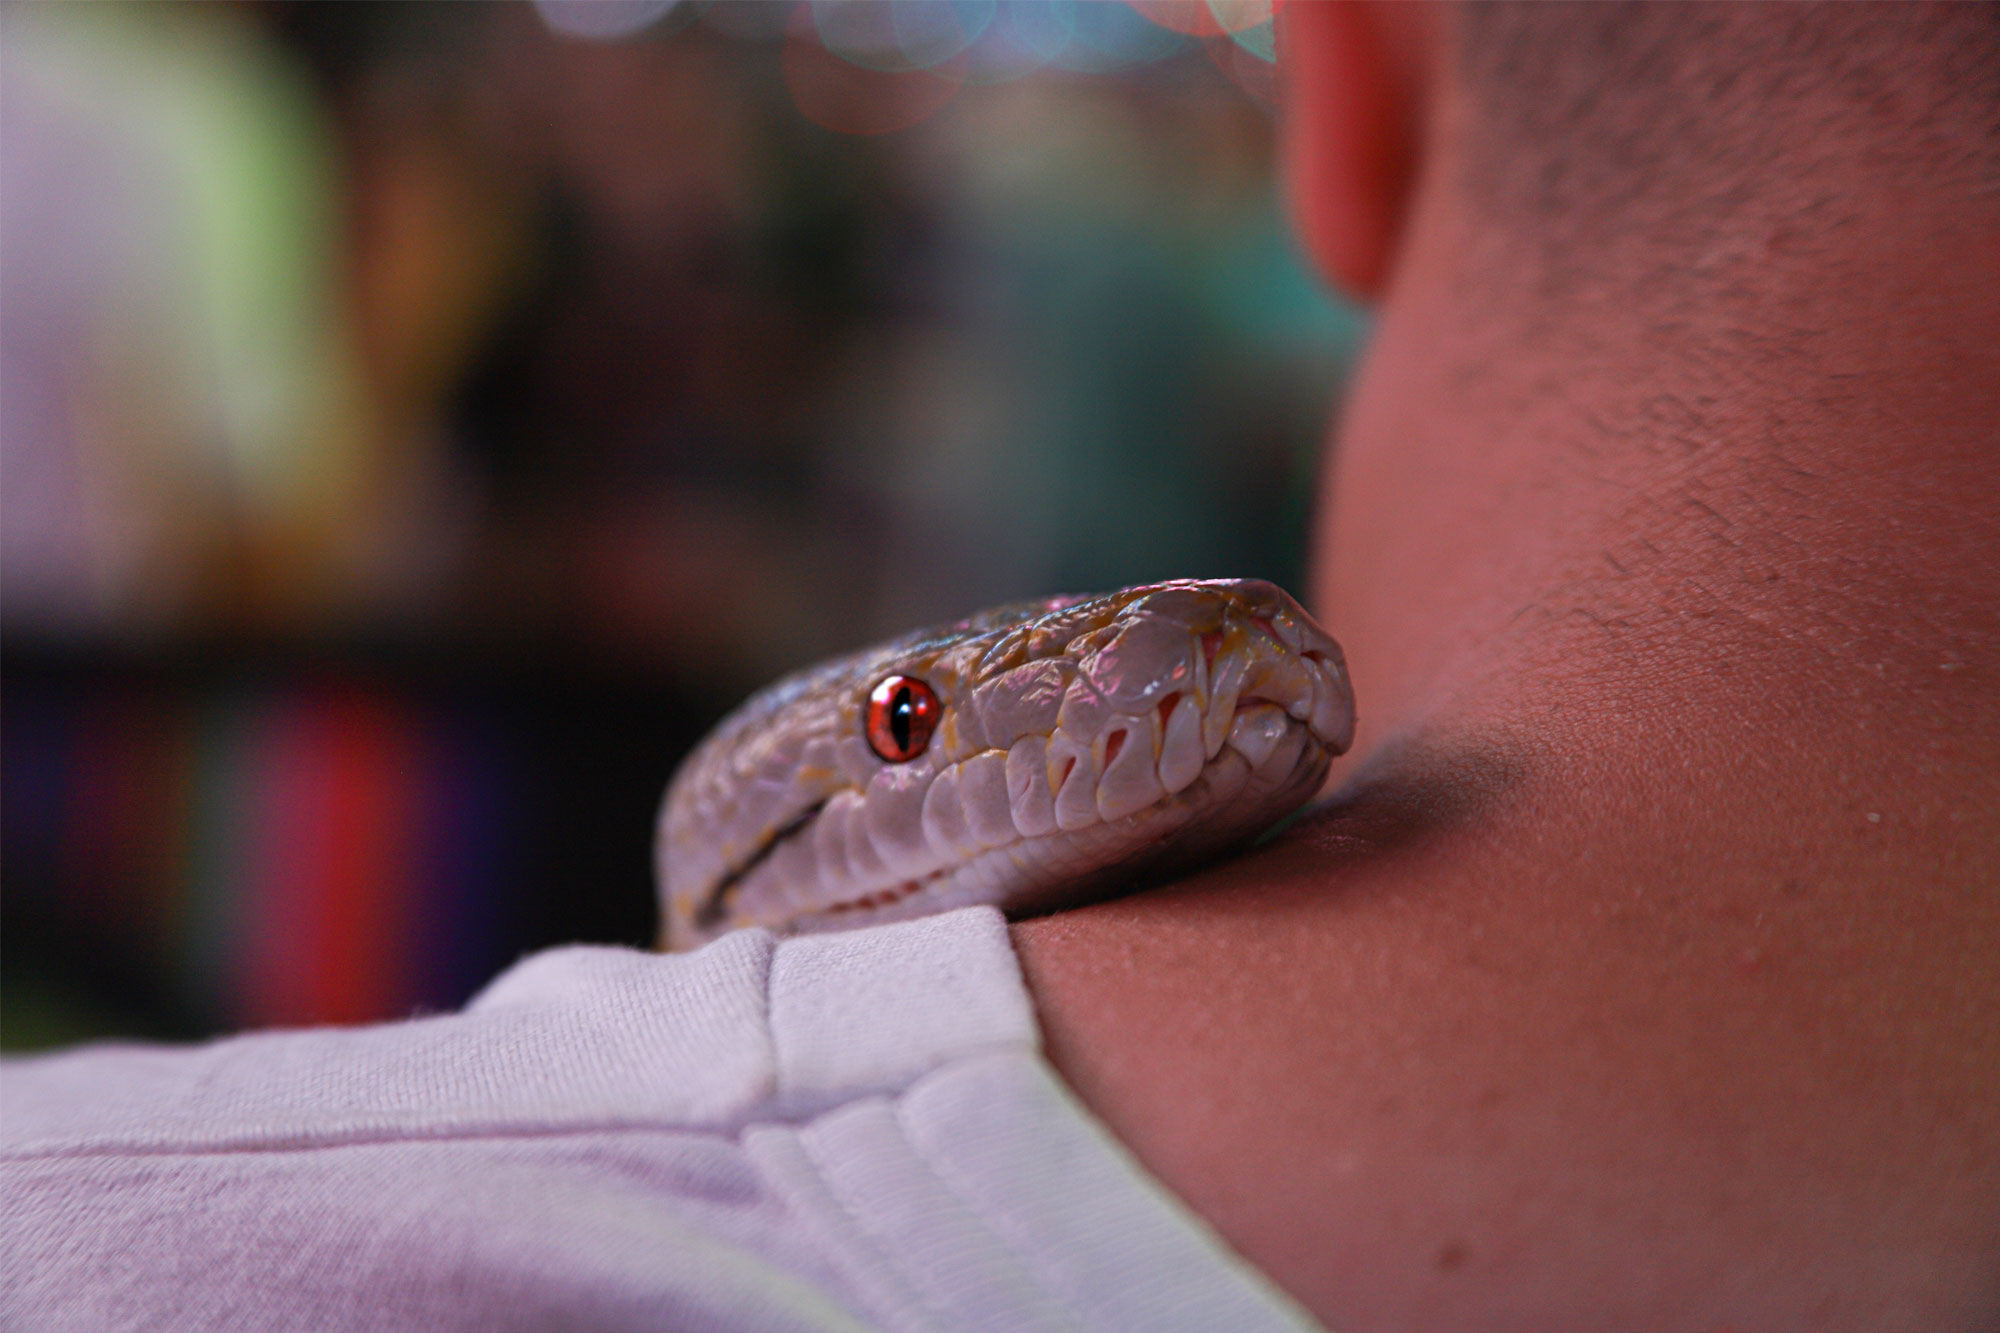 Grey snake on neck